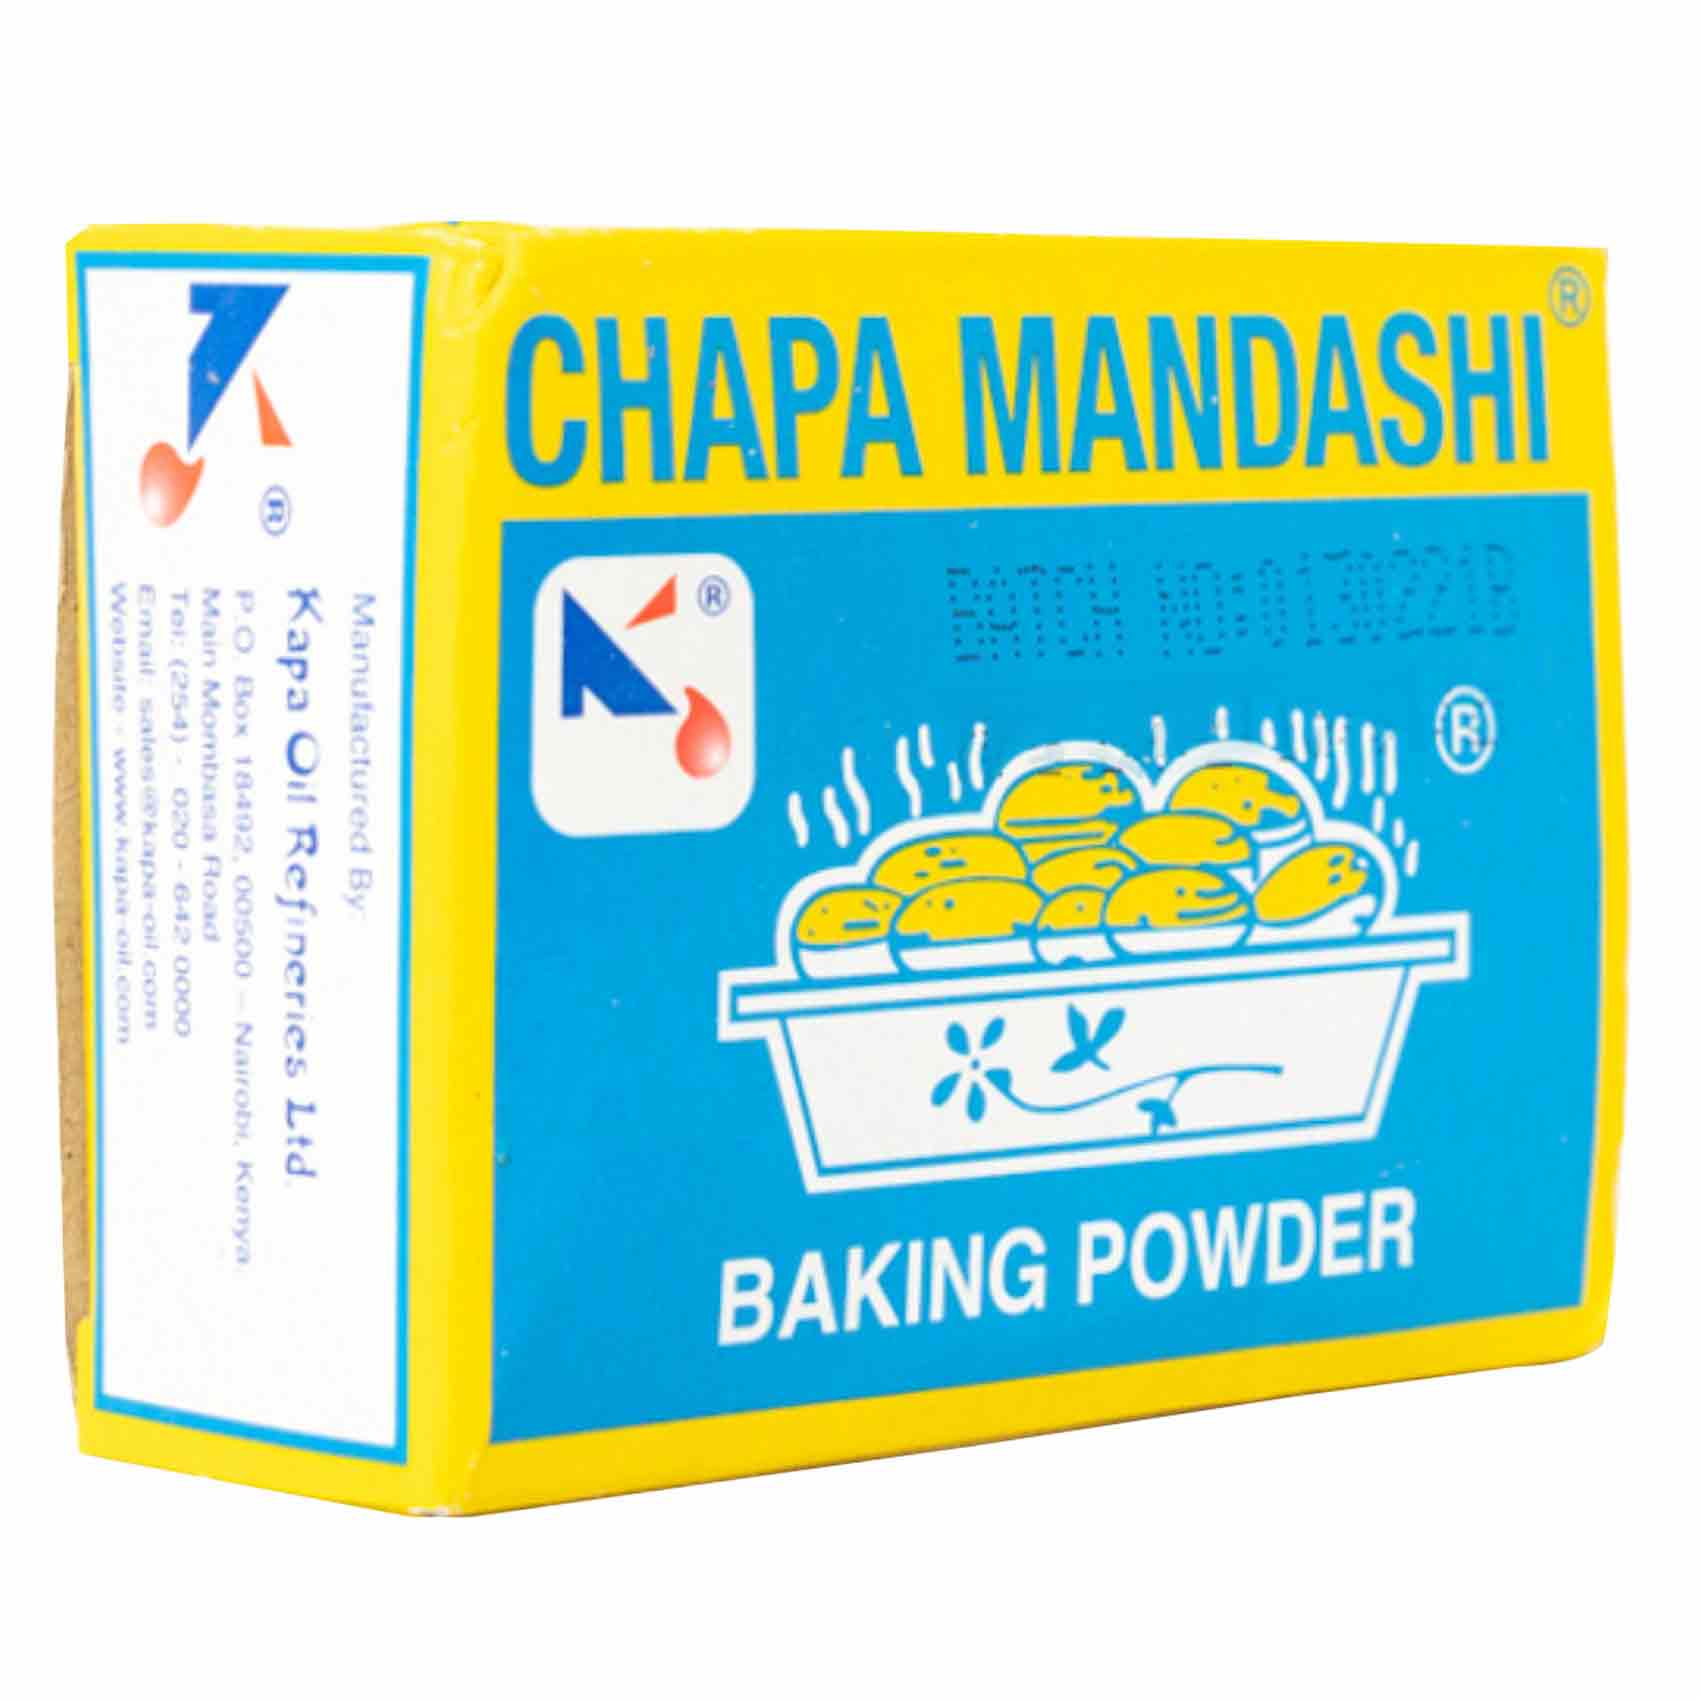 Chapa Mandashi Baking Powder 100g